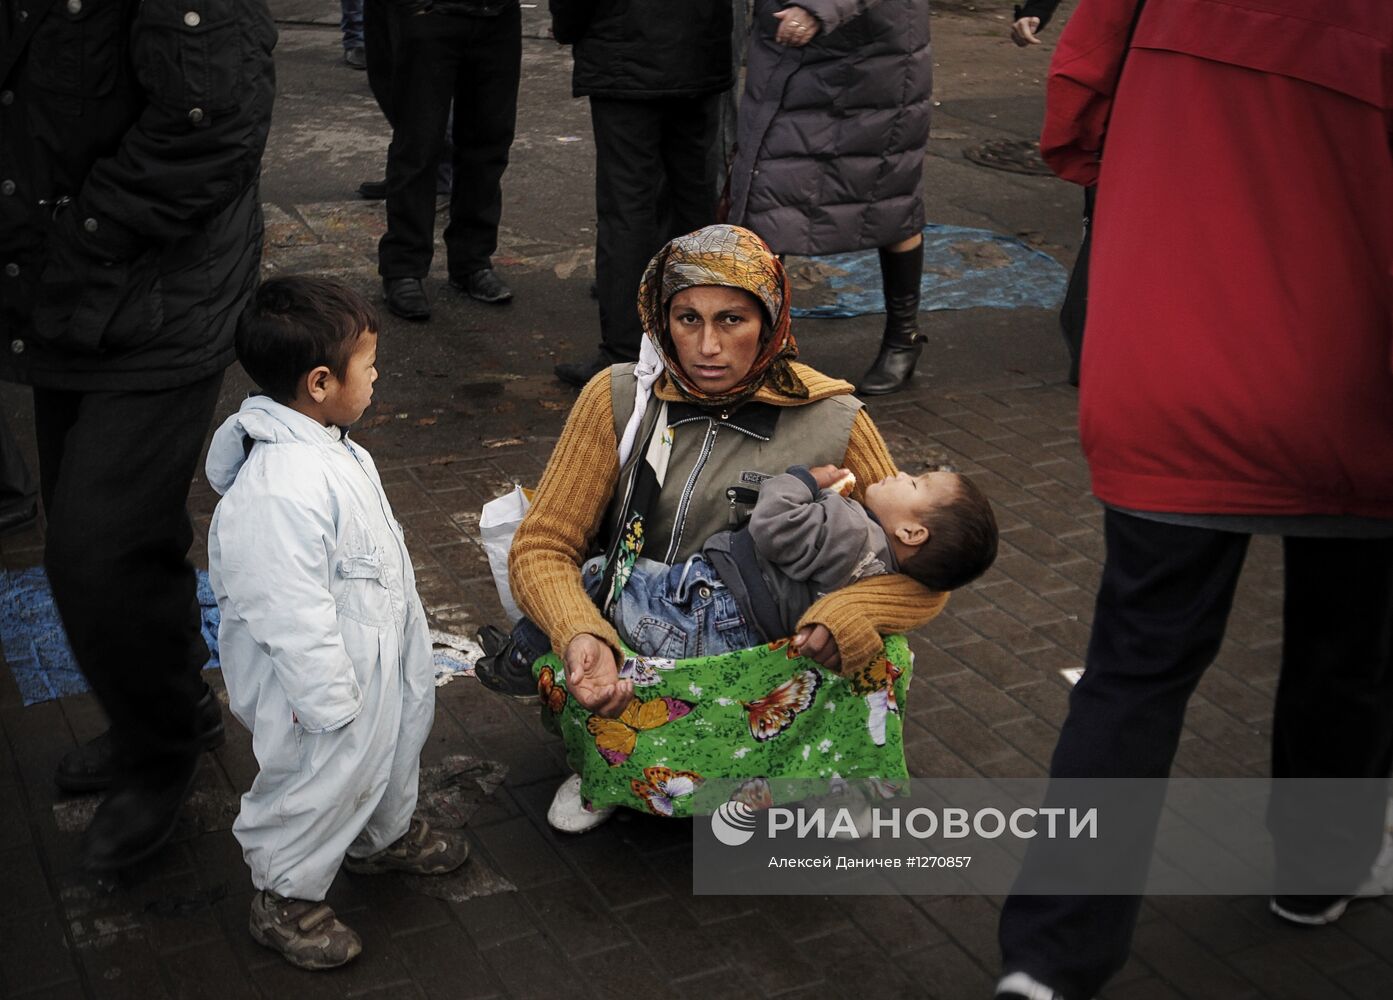 Цыганка с детьми на одной из улиц Санкт-Петербурга